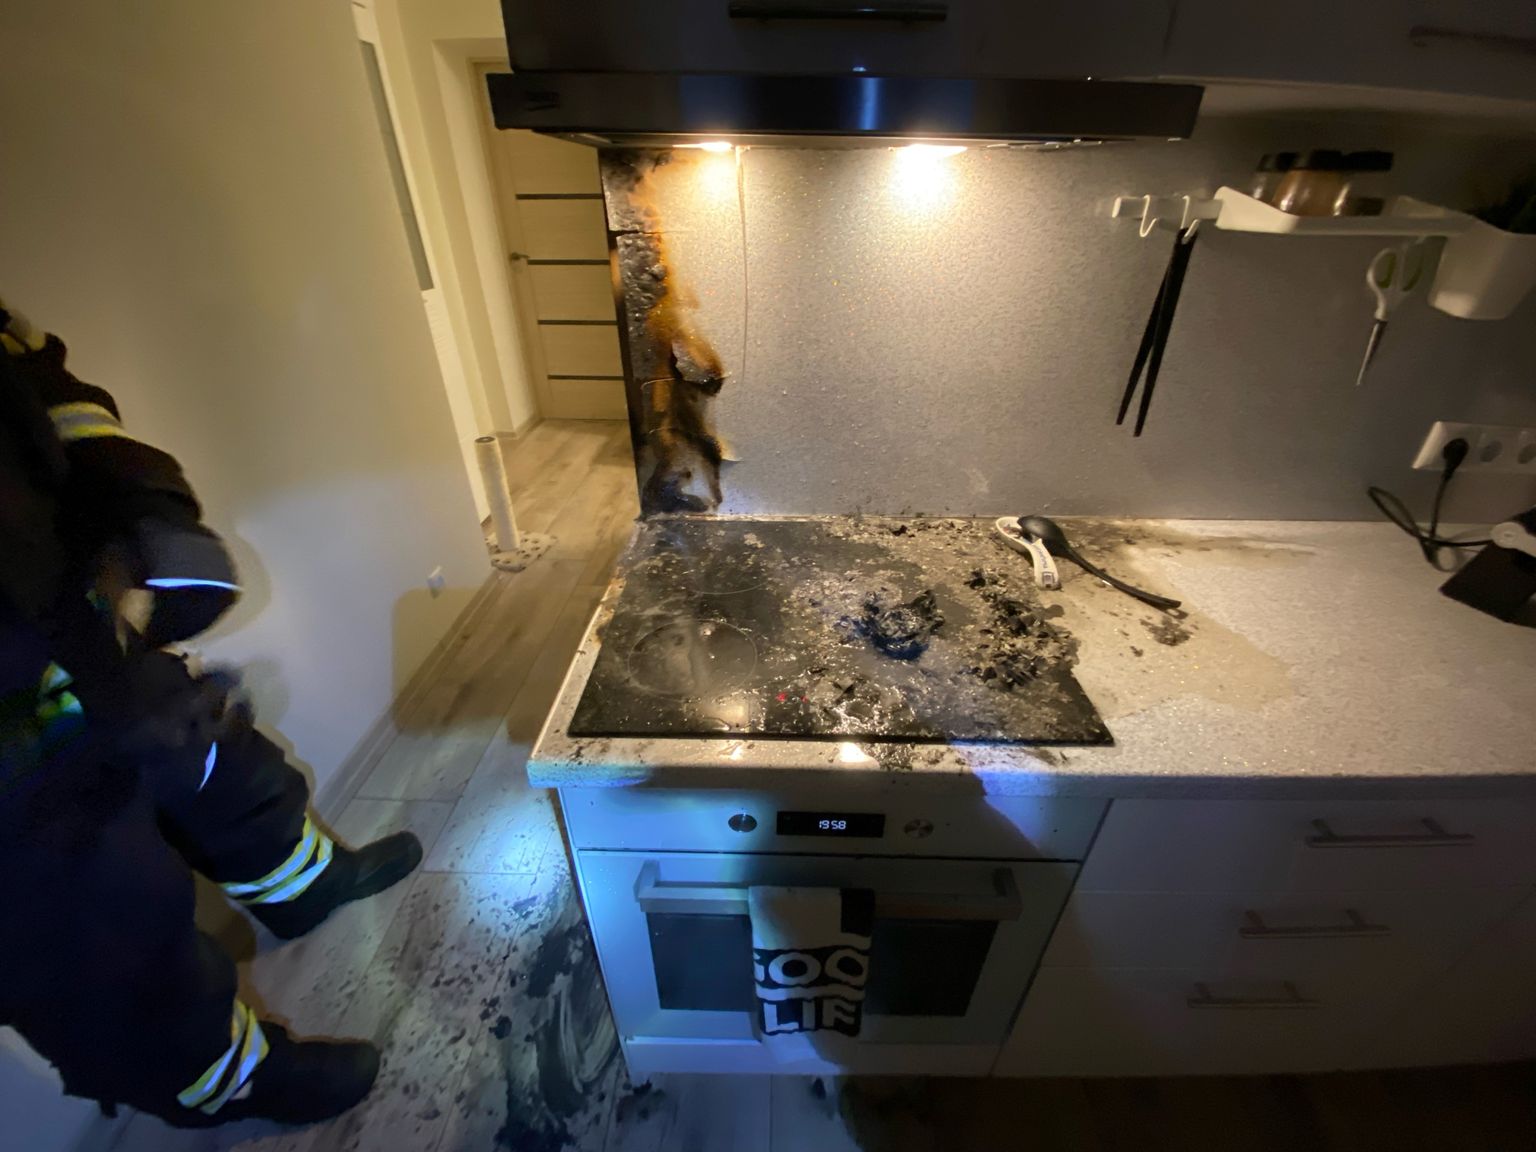 В нарвской квартире кухня пострадала от загоревшейся на электроплите картонной коробки.